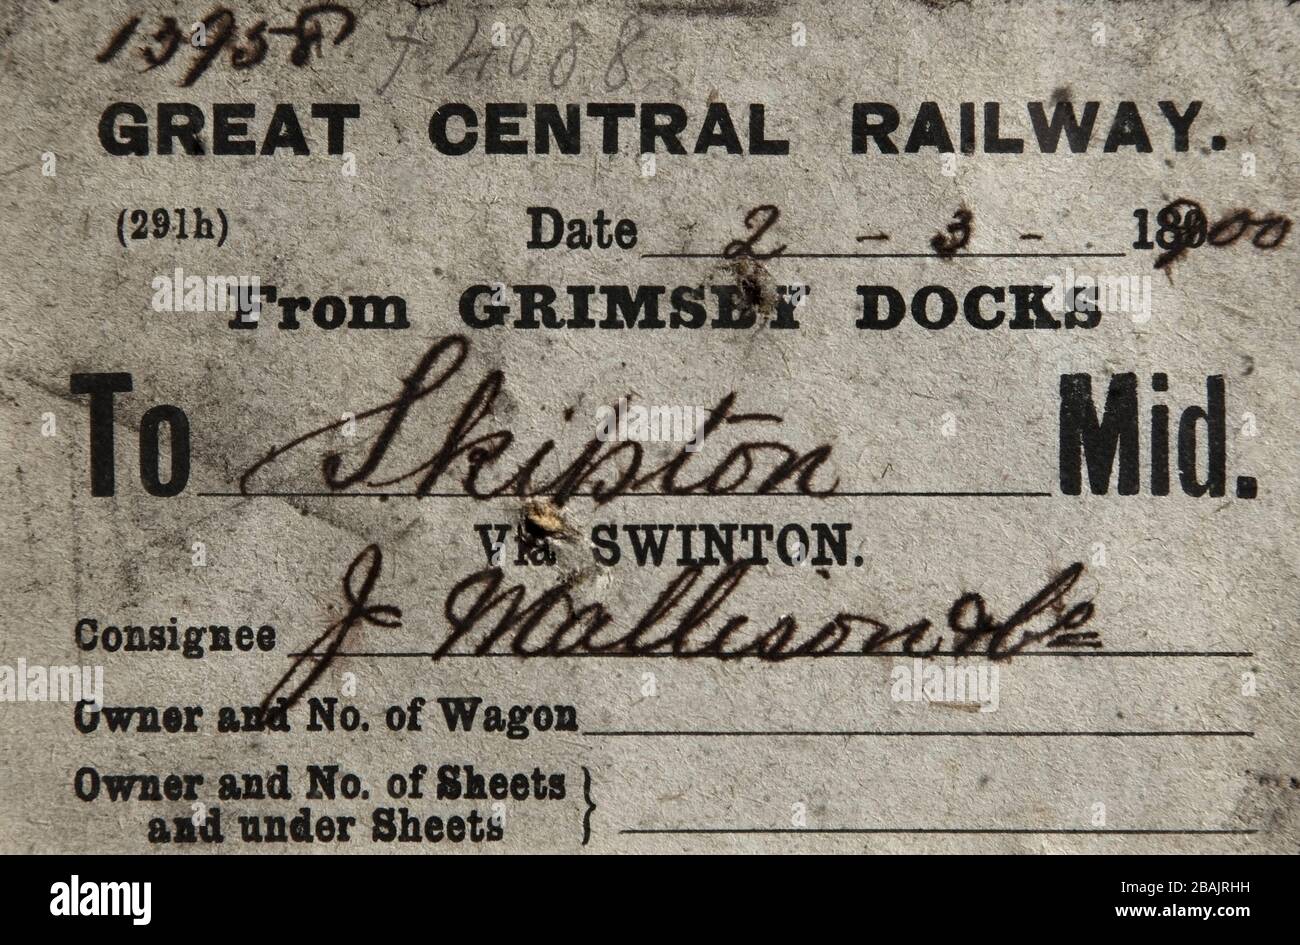 Antigua etiqueta para el envío de mercancías desde Grimsby Docks a la estación de ferrocarril de Skipton, Gran Ferrocarril Central, 2 de marzo de 1900. Foto de stock